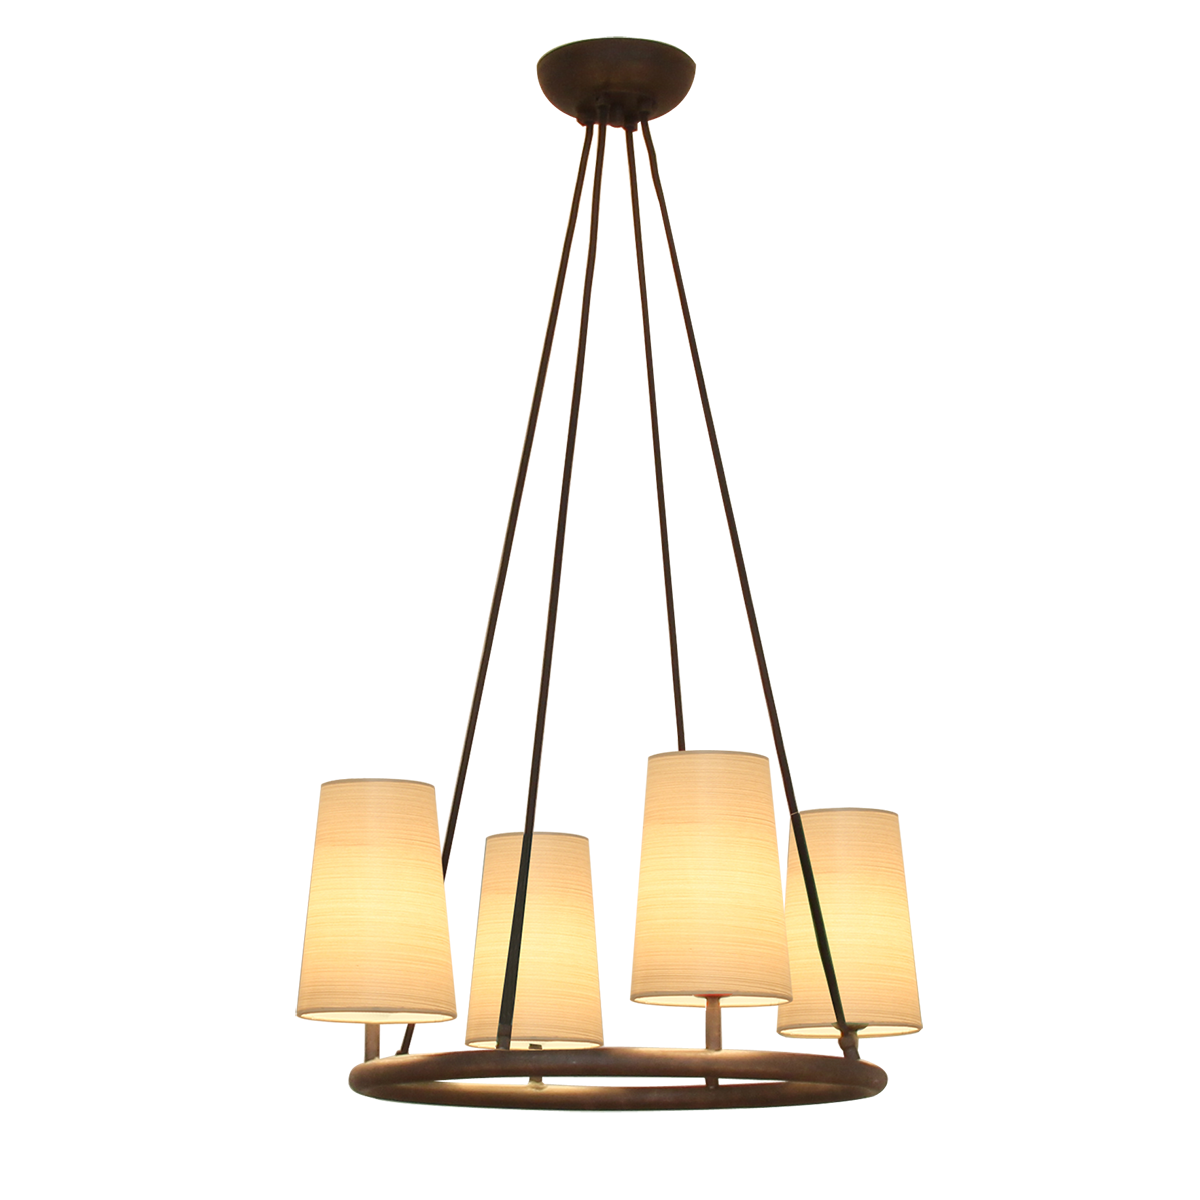 Flair Ringkrone D= 52cm 4 flammig mit Lampenschirmen in Strichlack für runde Tische ab 110cm